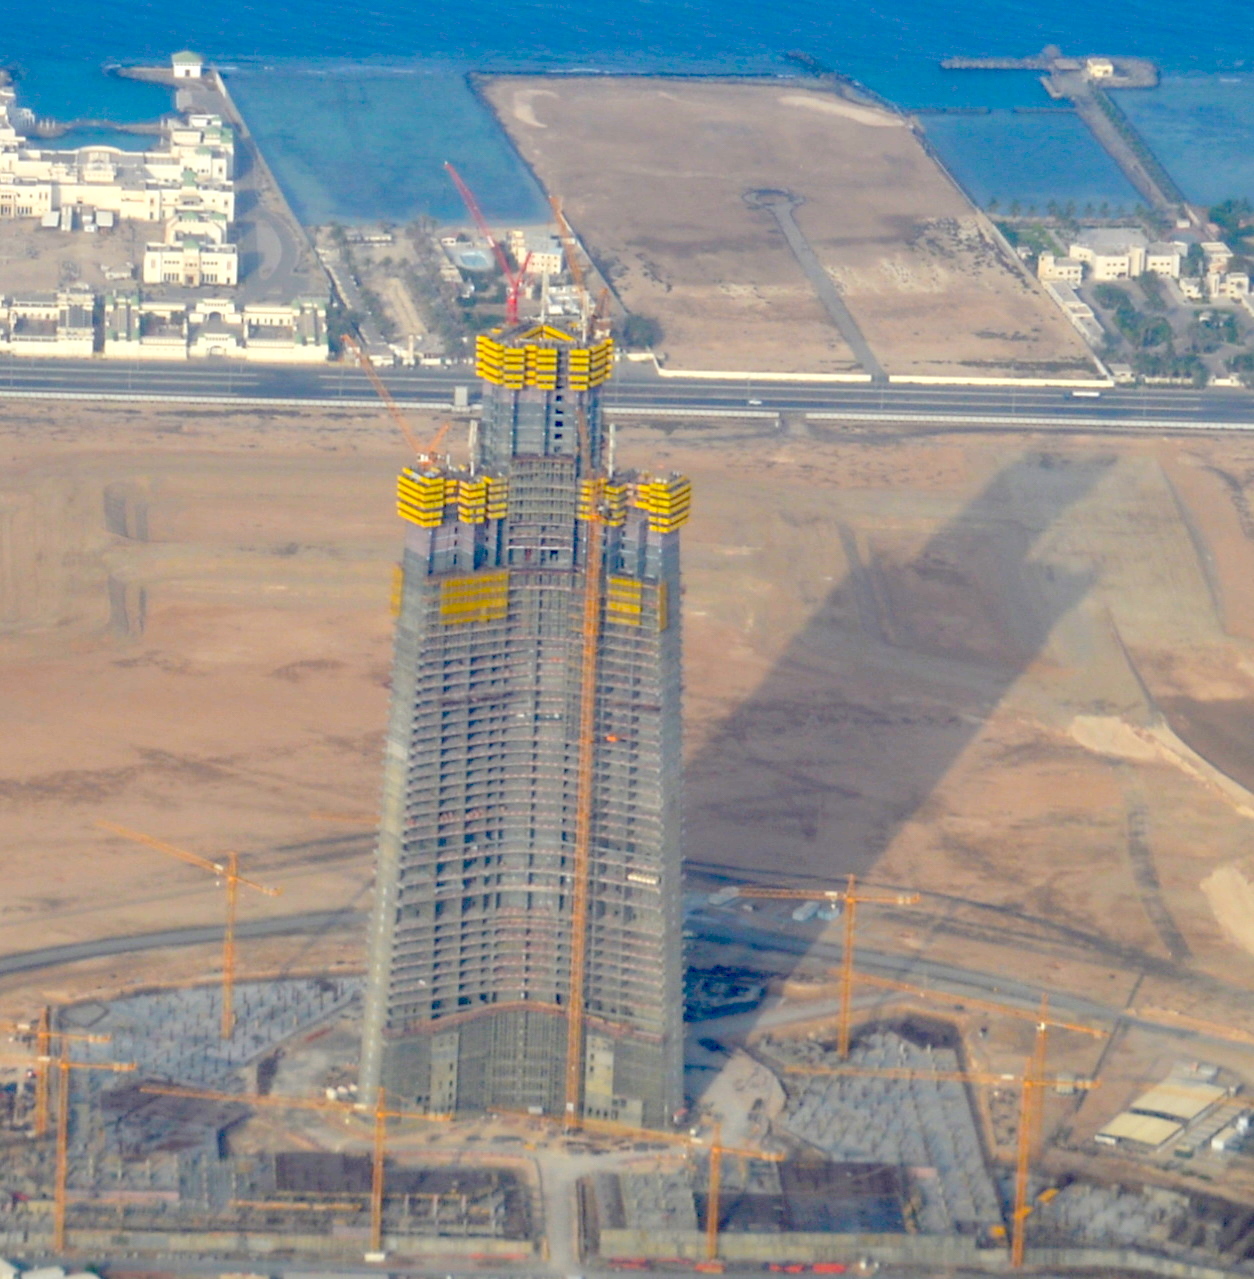 Siêu dự án của Ả Rập Xê-út: Tòa tháp lớn nhất thế giới tiếp tục xây dựng - Ảnh 2.